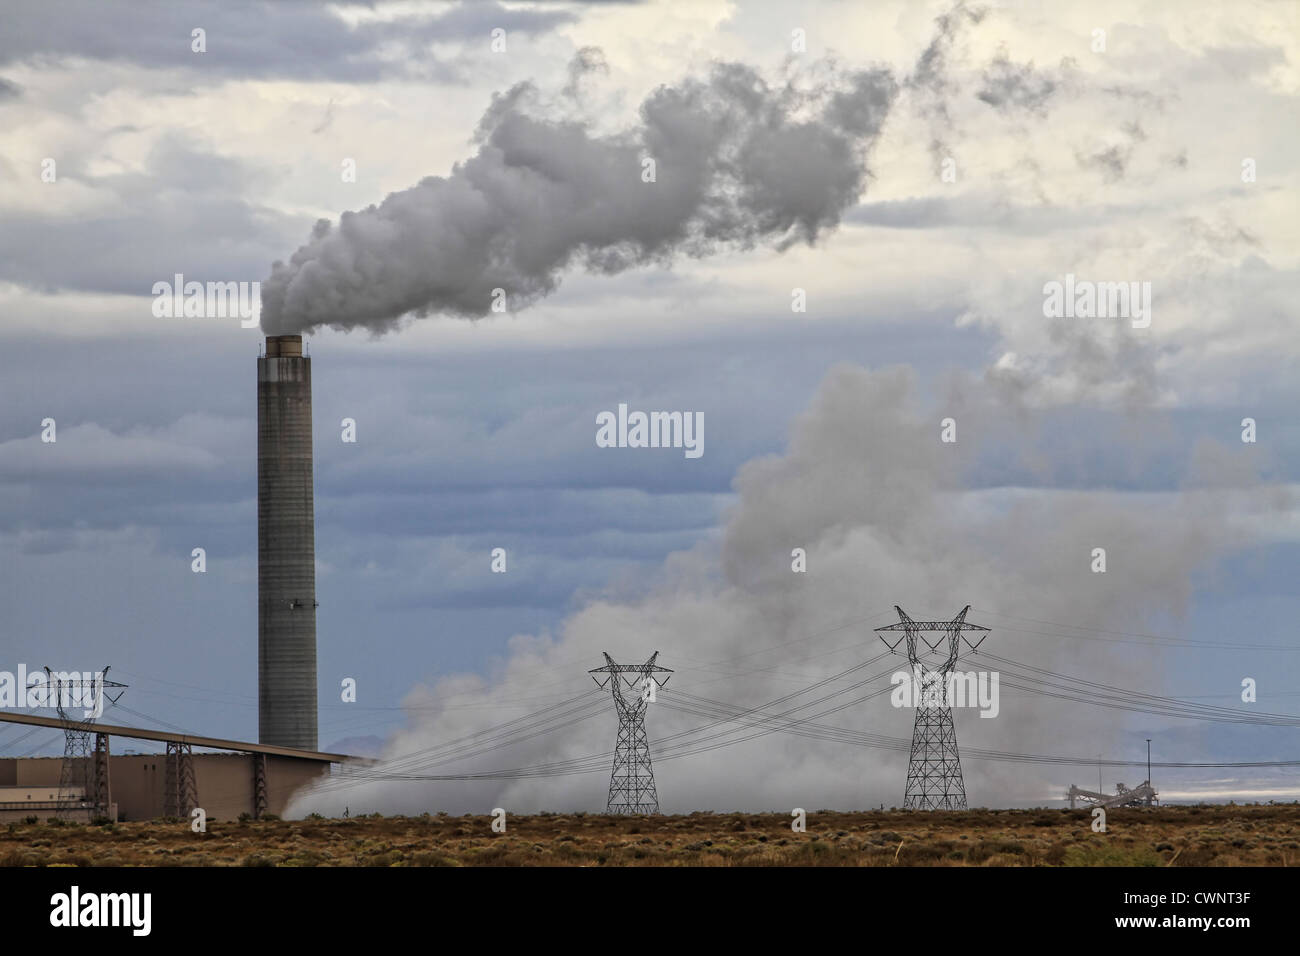 Ein Schornstein speit Schadstoffe während ein Kraftwerk Strom erzeugt.  Stromleitungen und Polen umgeben die Anlage. Stockfoto